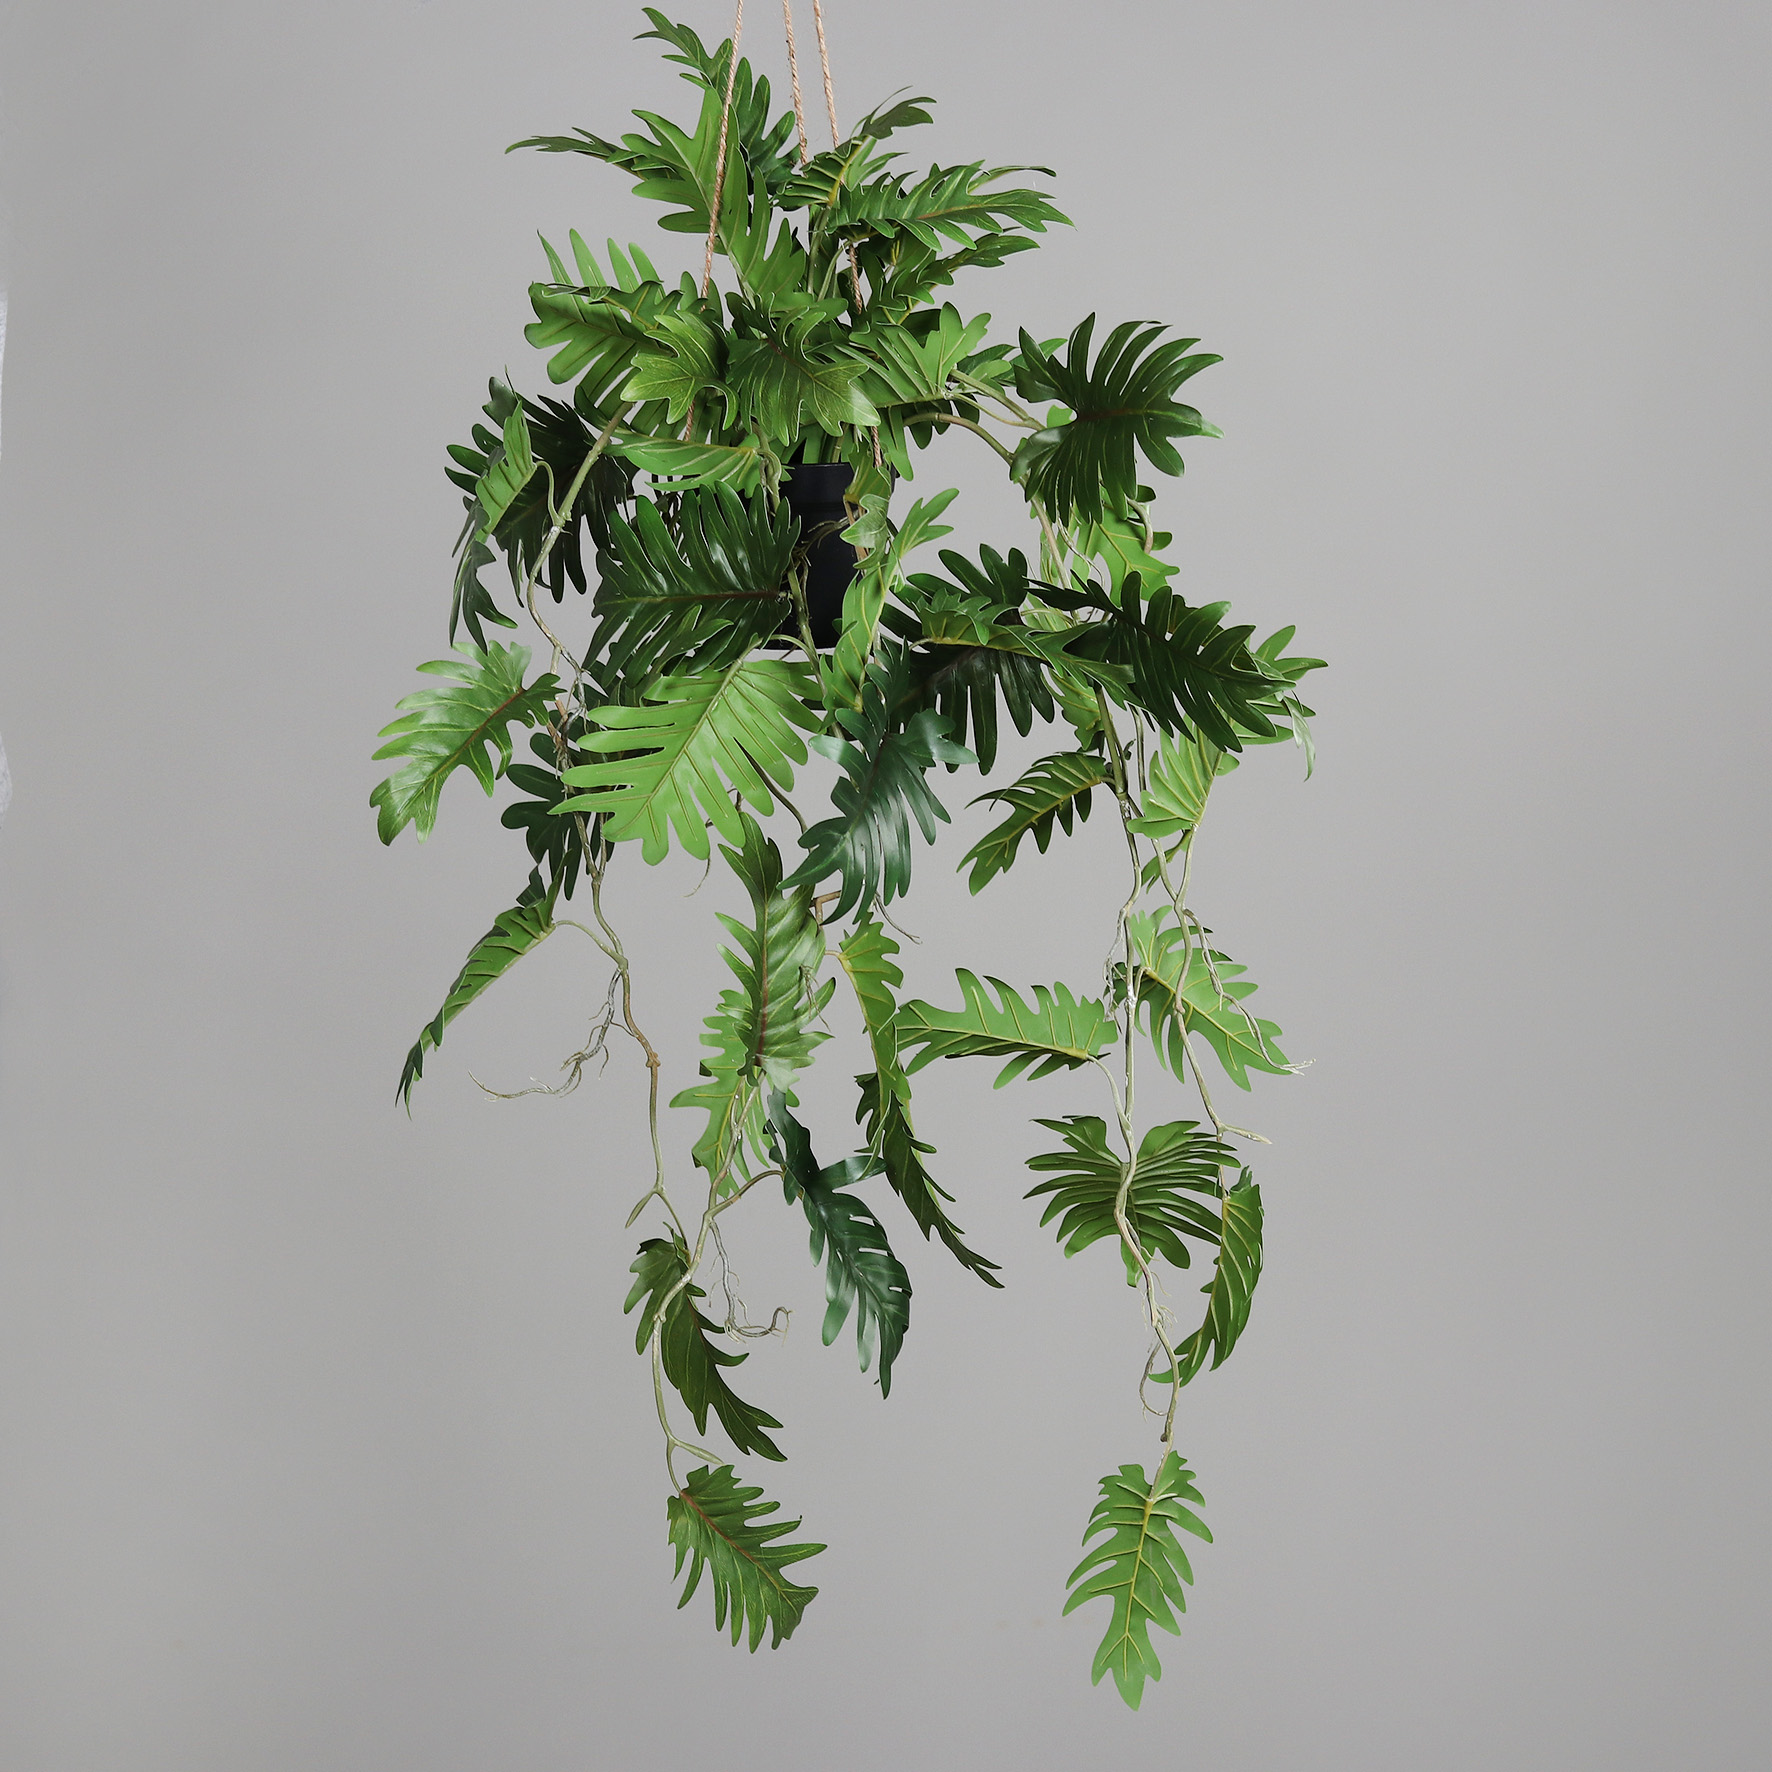 Monsteraranke im Hängetopf 60cm / 100cm DP Kunstpflanzen Hängeampel künstliche Pflanzen Monstera